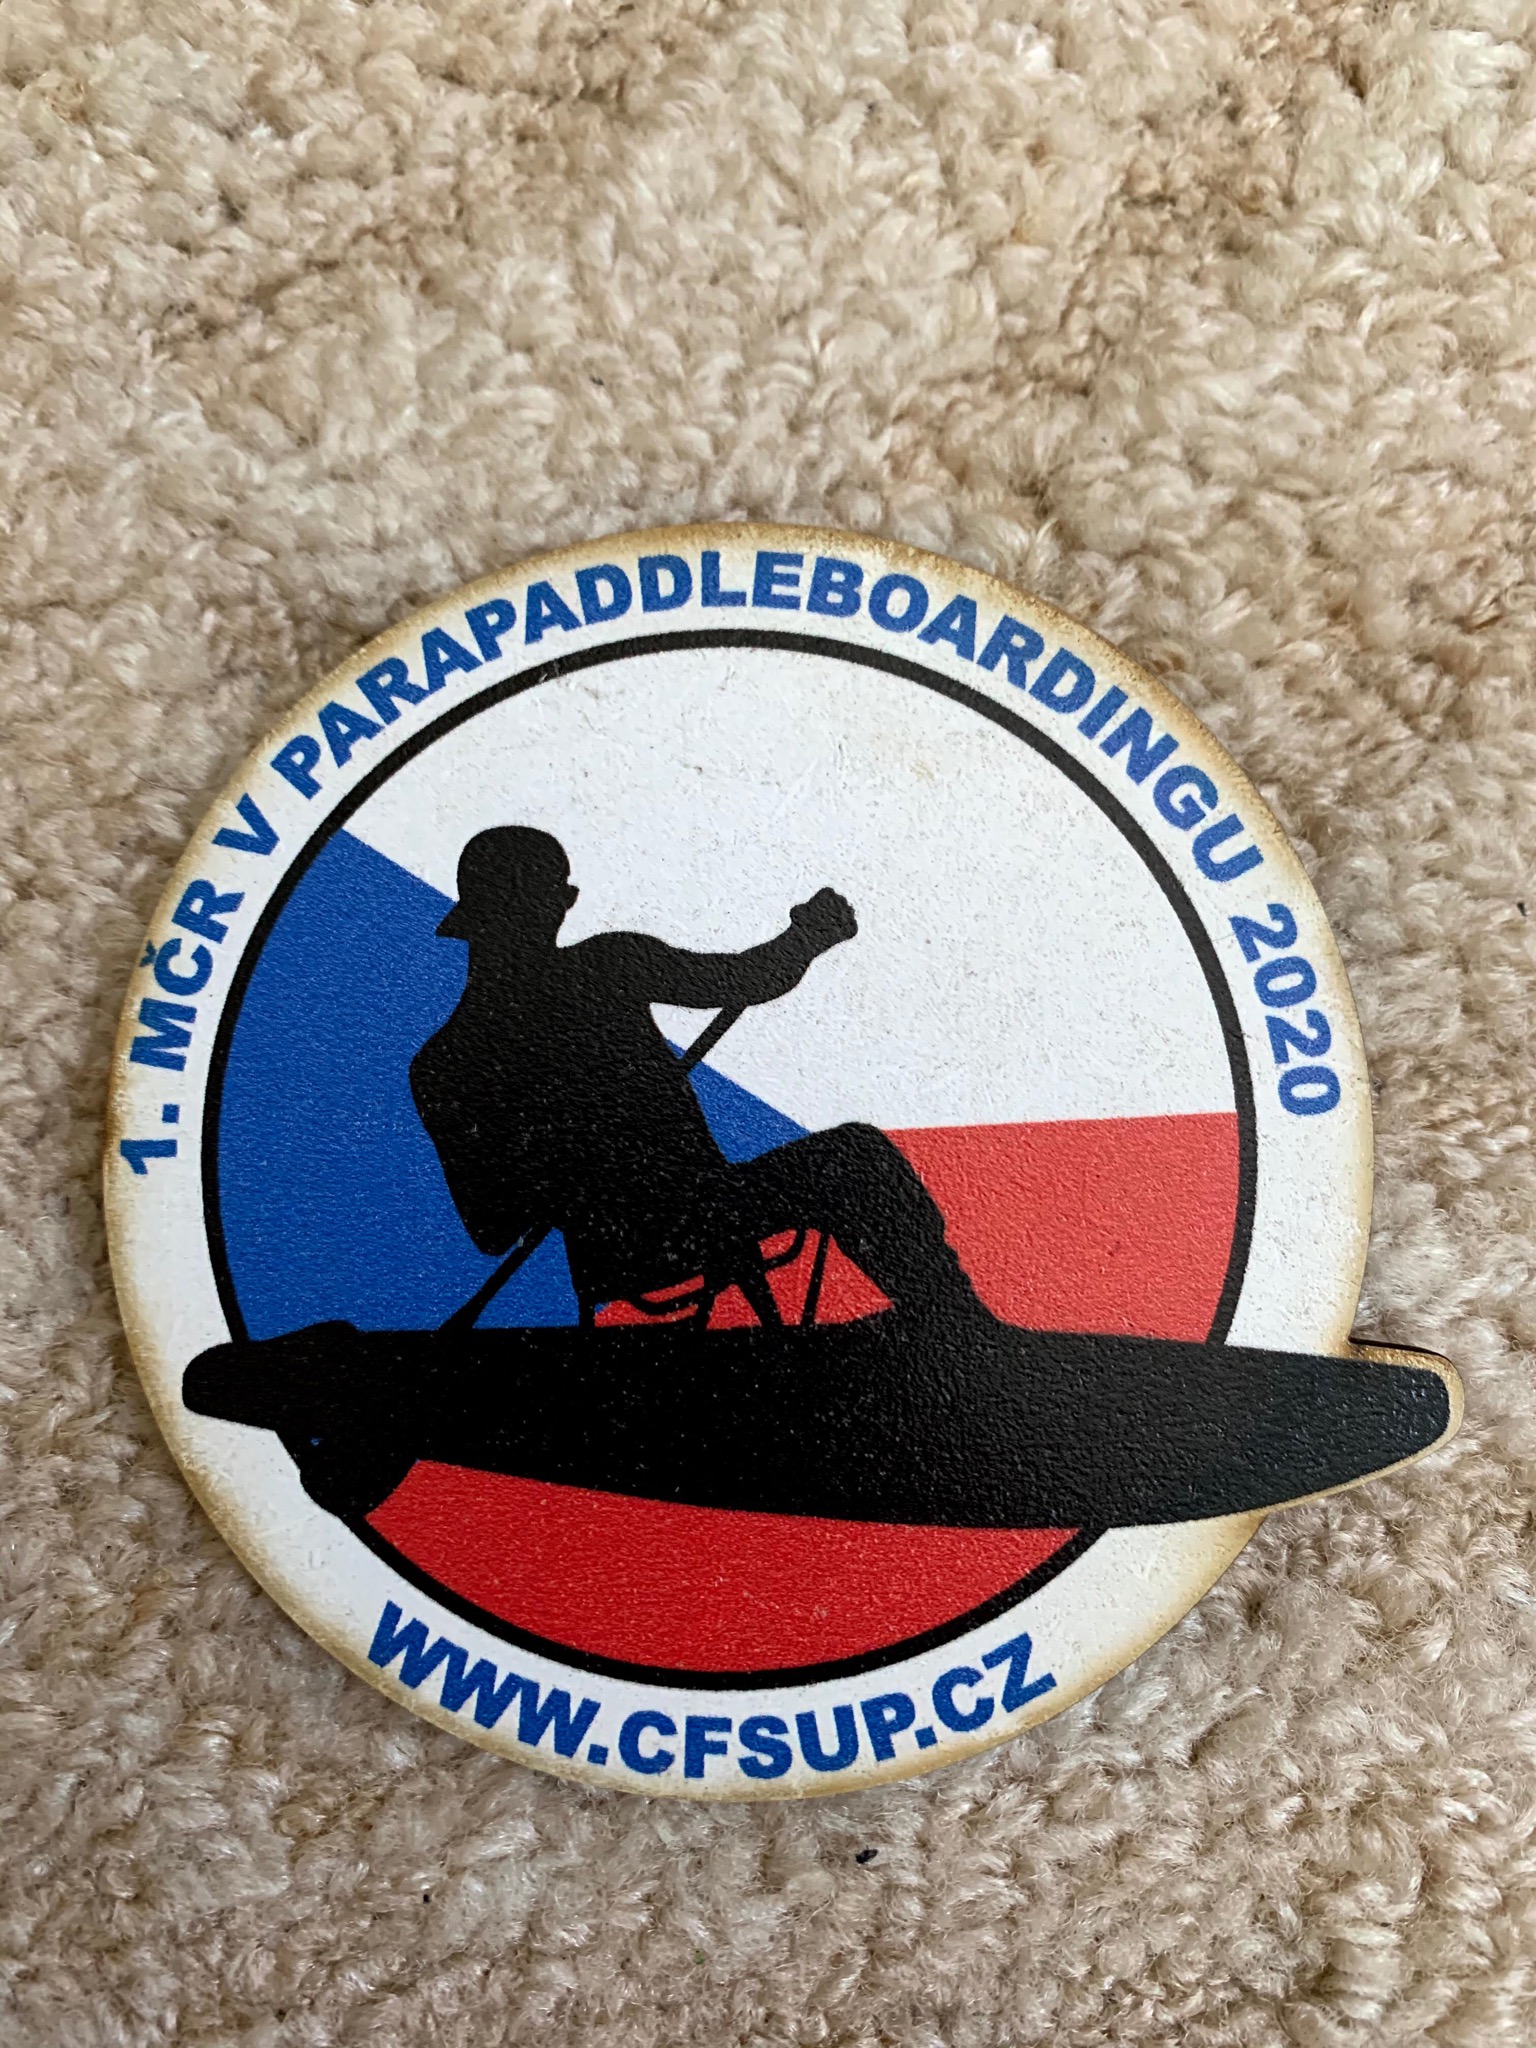 Parapaddleboard